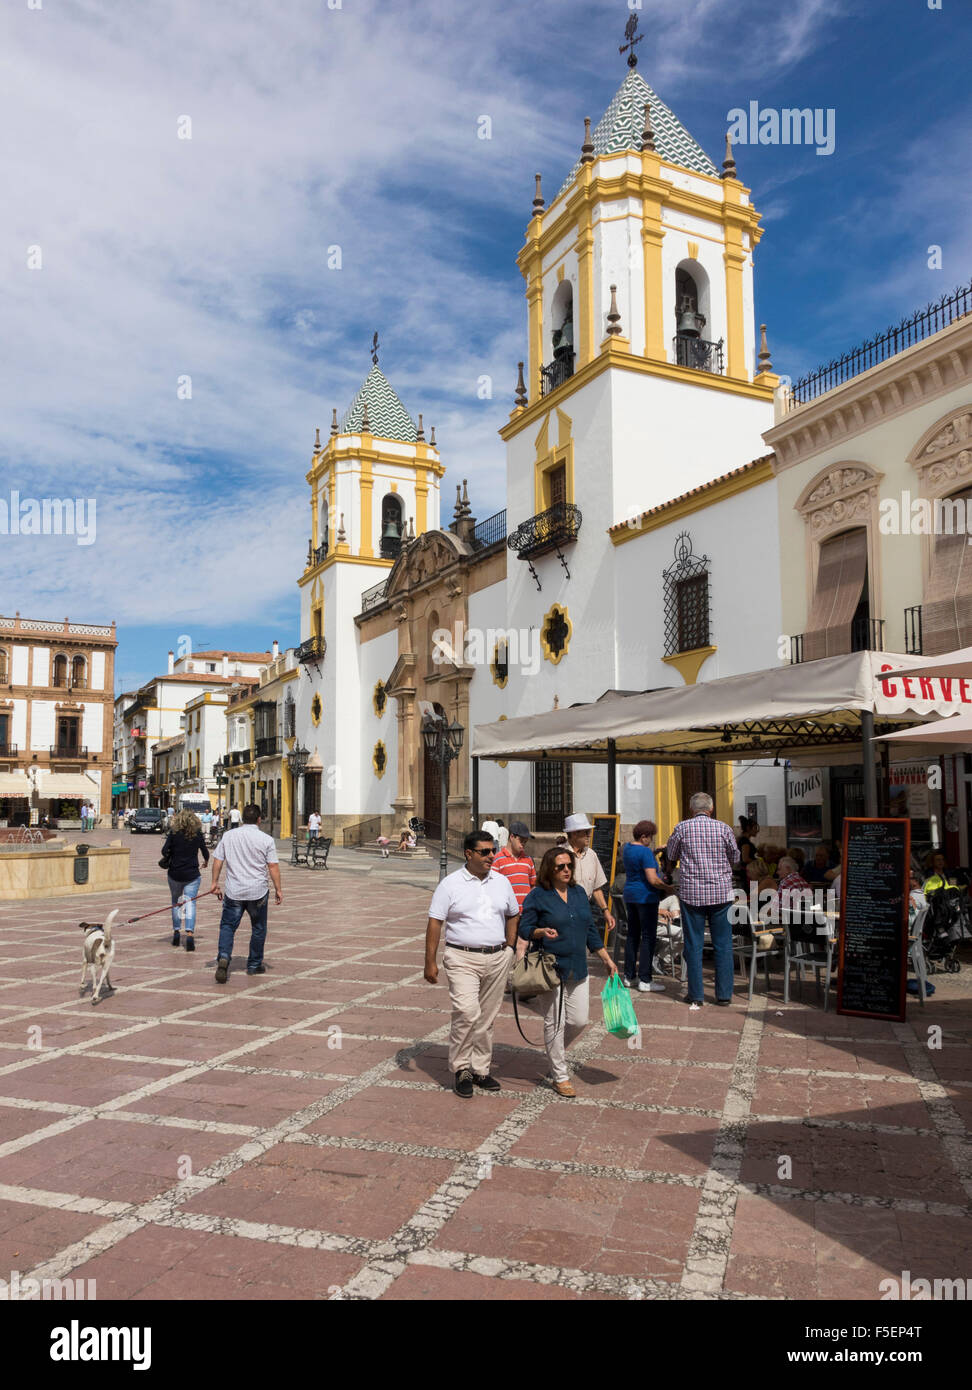 Ronda, Andalousie, Espagne - Plaza del Socorro et peint en blanc orné l'église avec les touristes et les habitants Banque D'Images